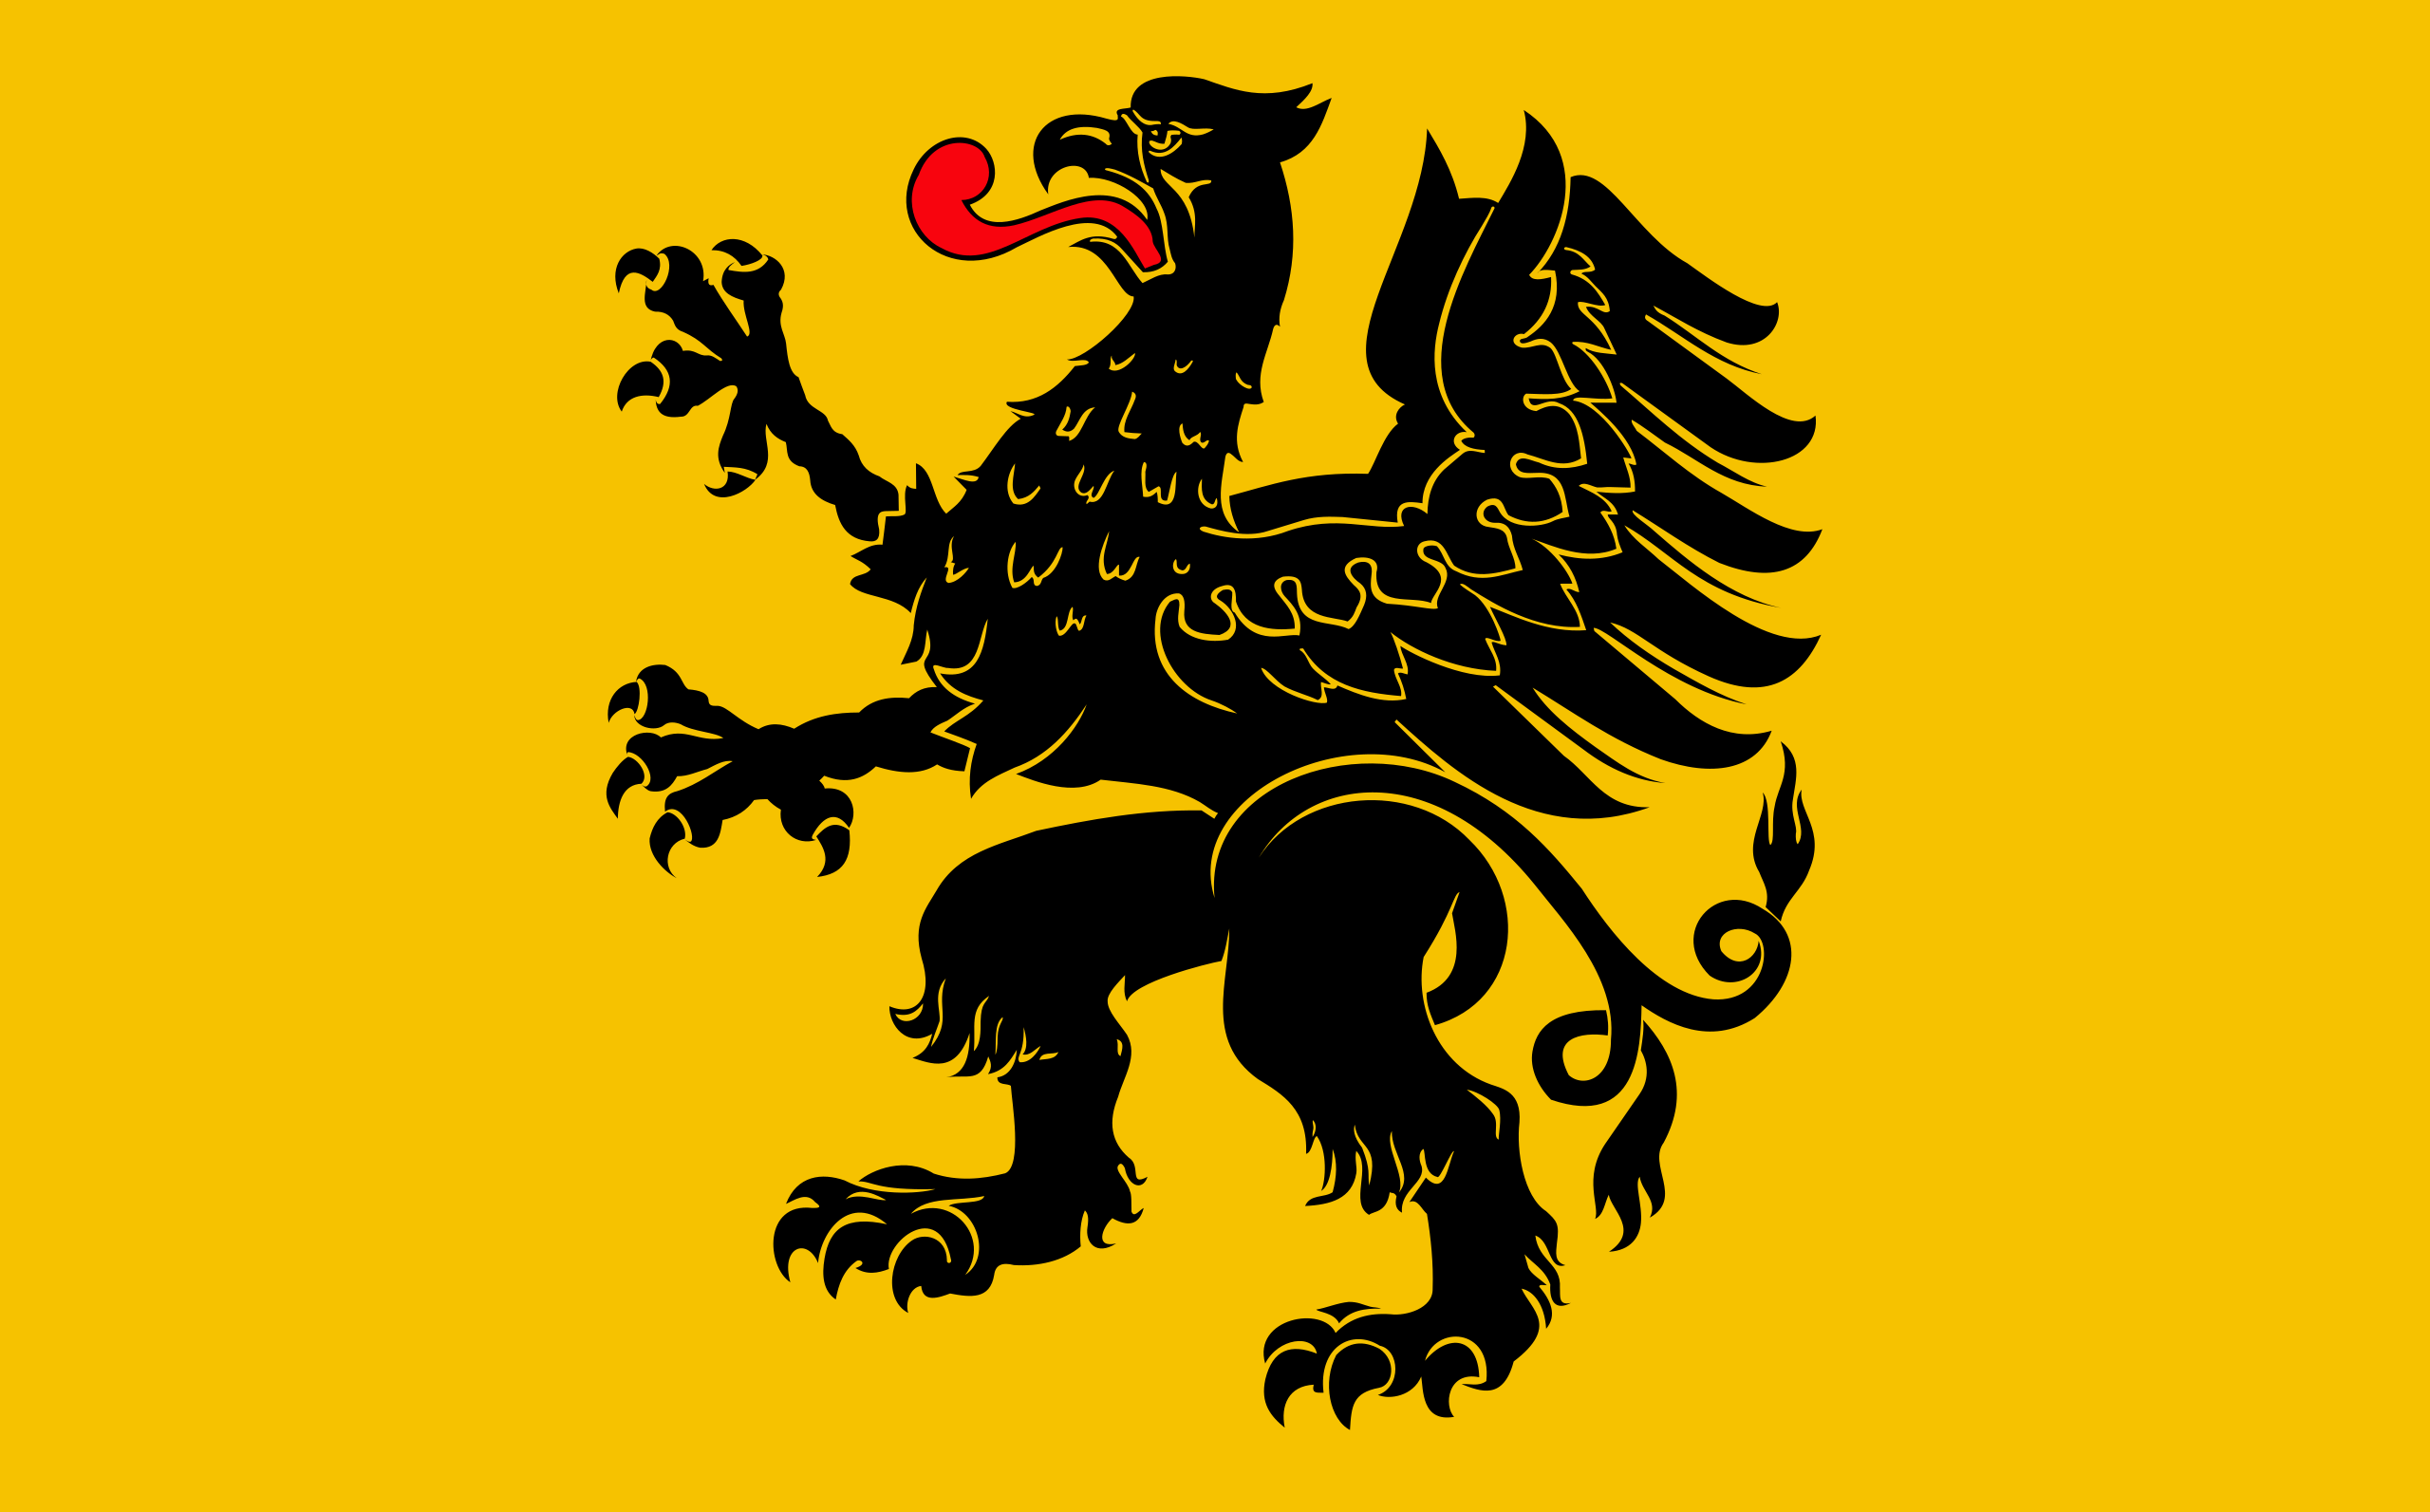 Vlajka pomořského vojvodství | vlajka, prapor, symbol, vlaječka, obrázek | Polská vojvodství |  2560x1593 px